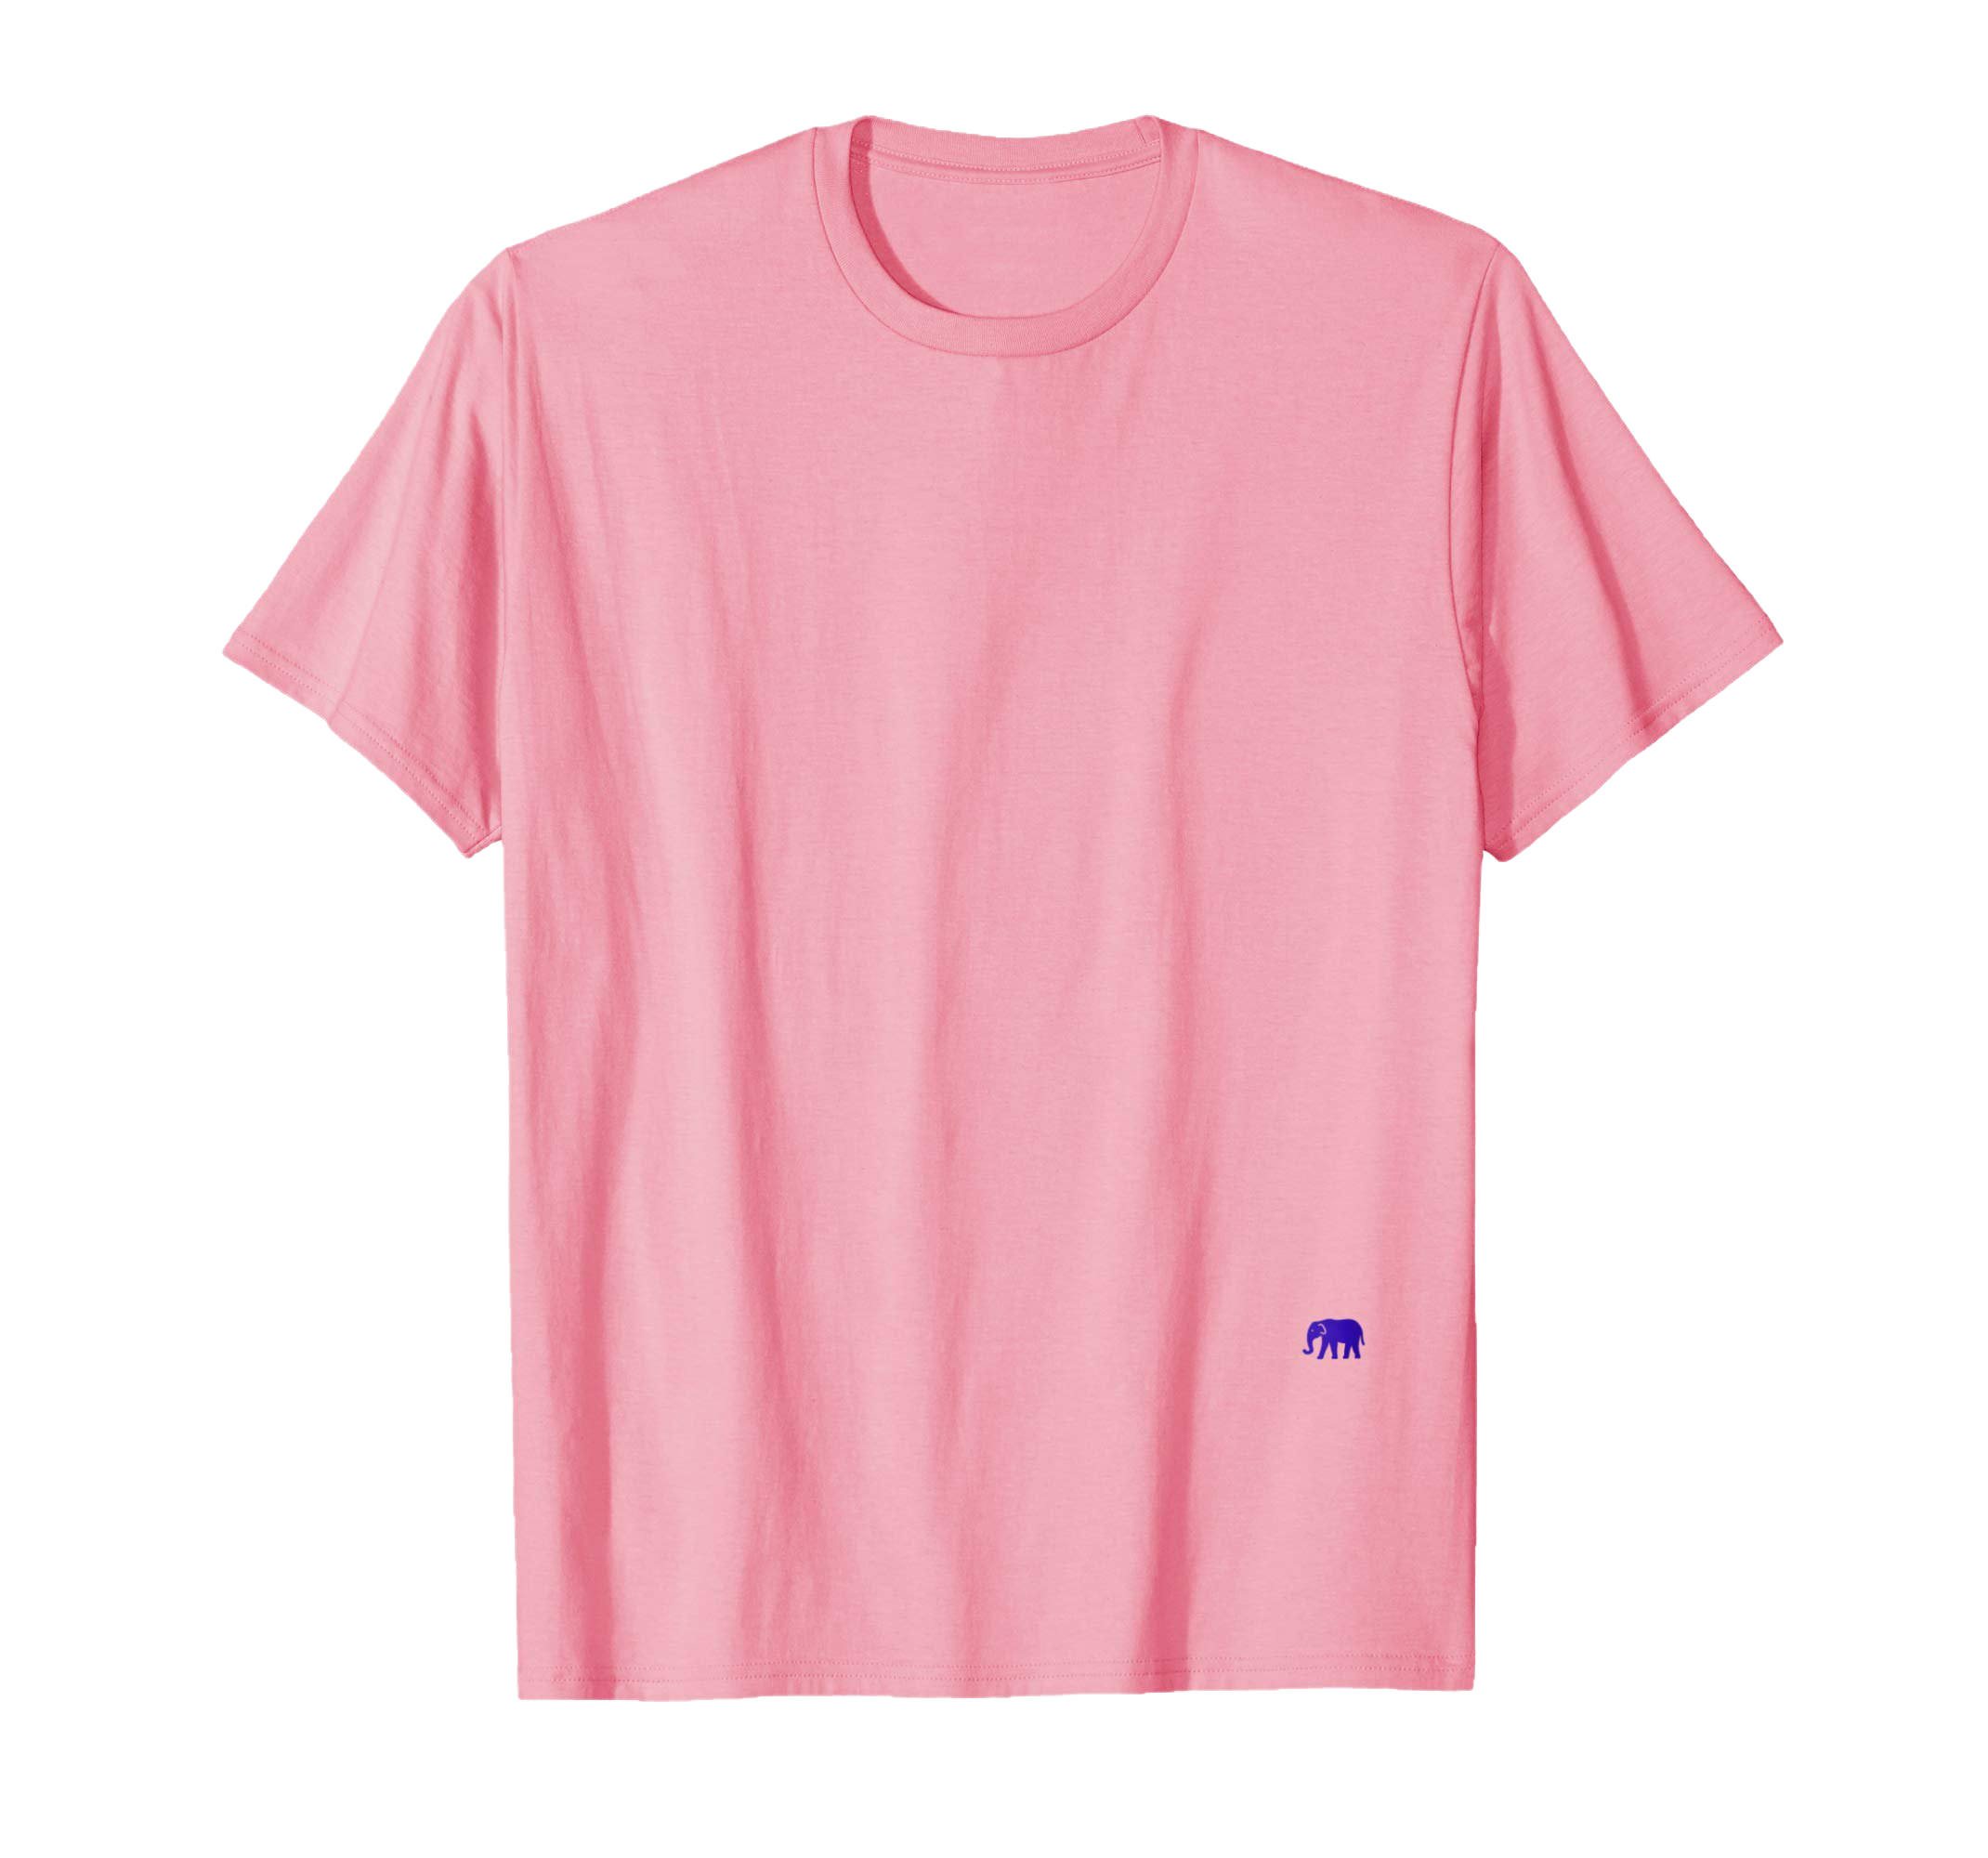 Просто розовая футболка PNG фото